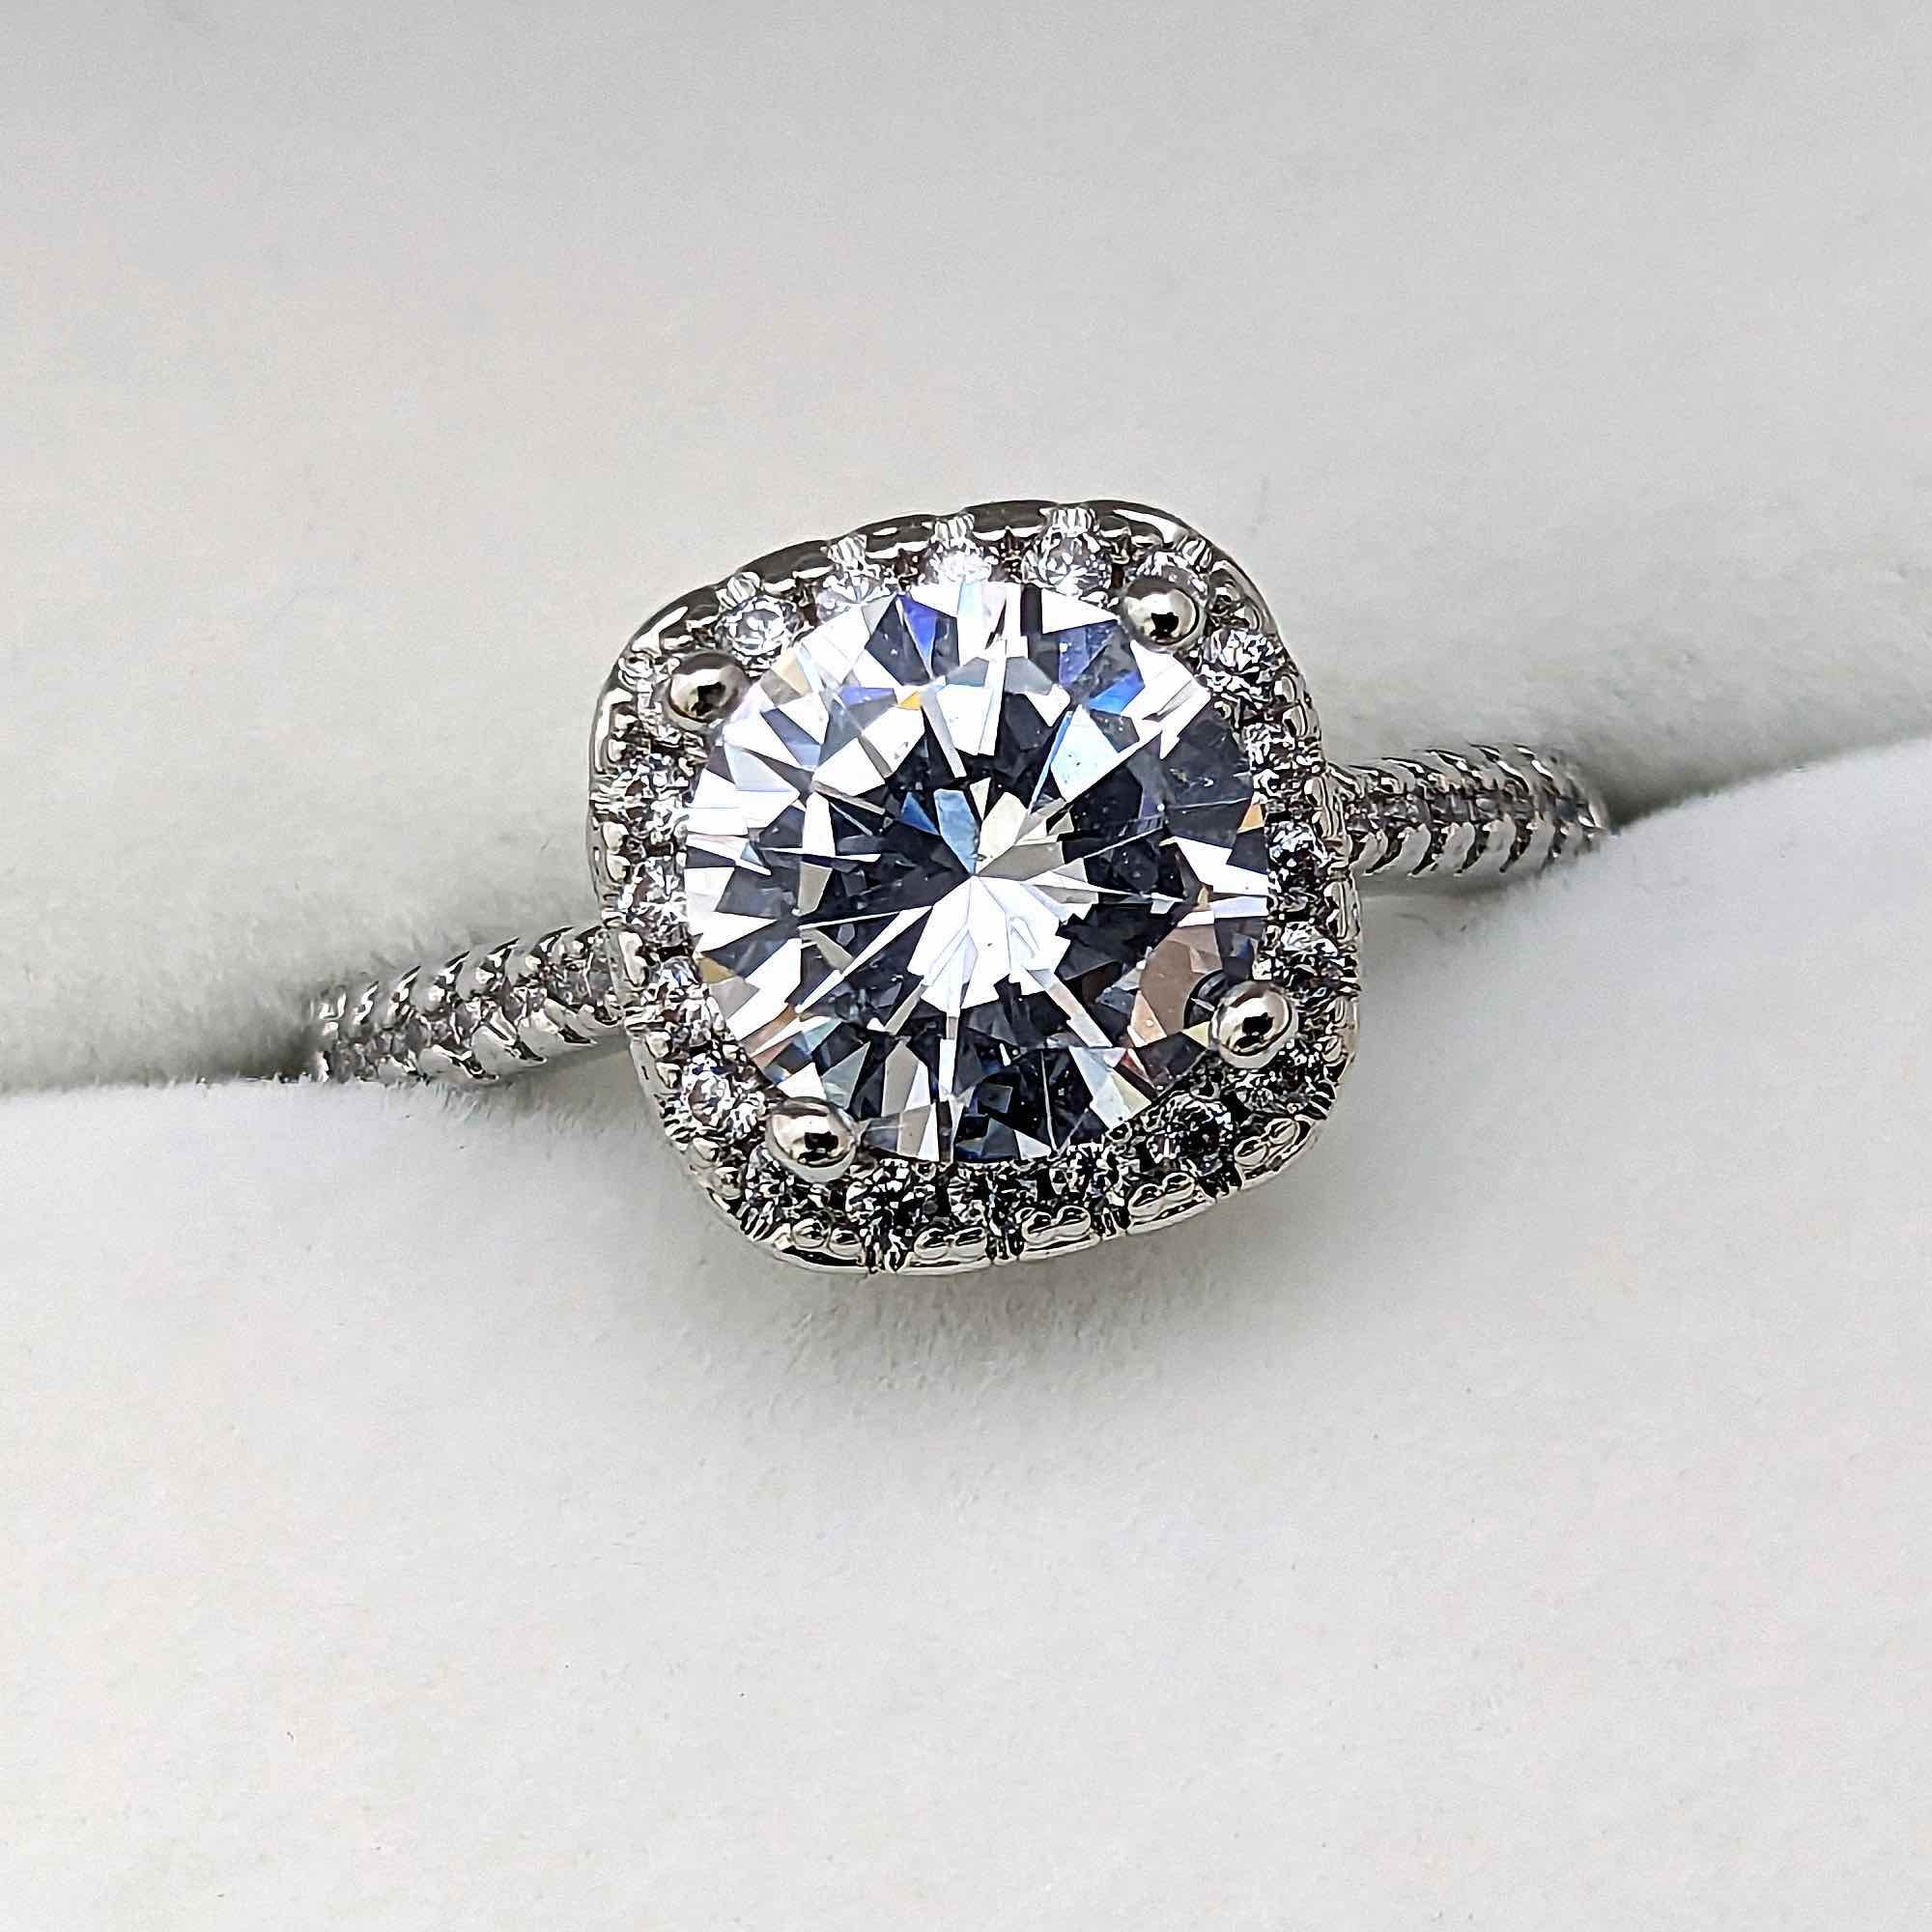 ２カラットの輝くダイヤモンドを囲むダイヤモンドで太陽が輝くような婚約指輪